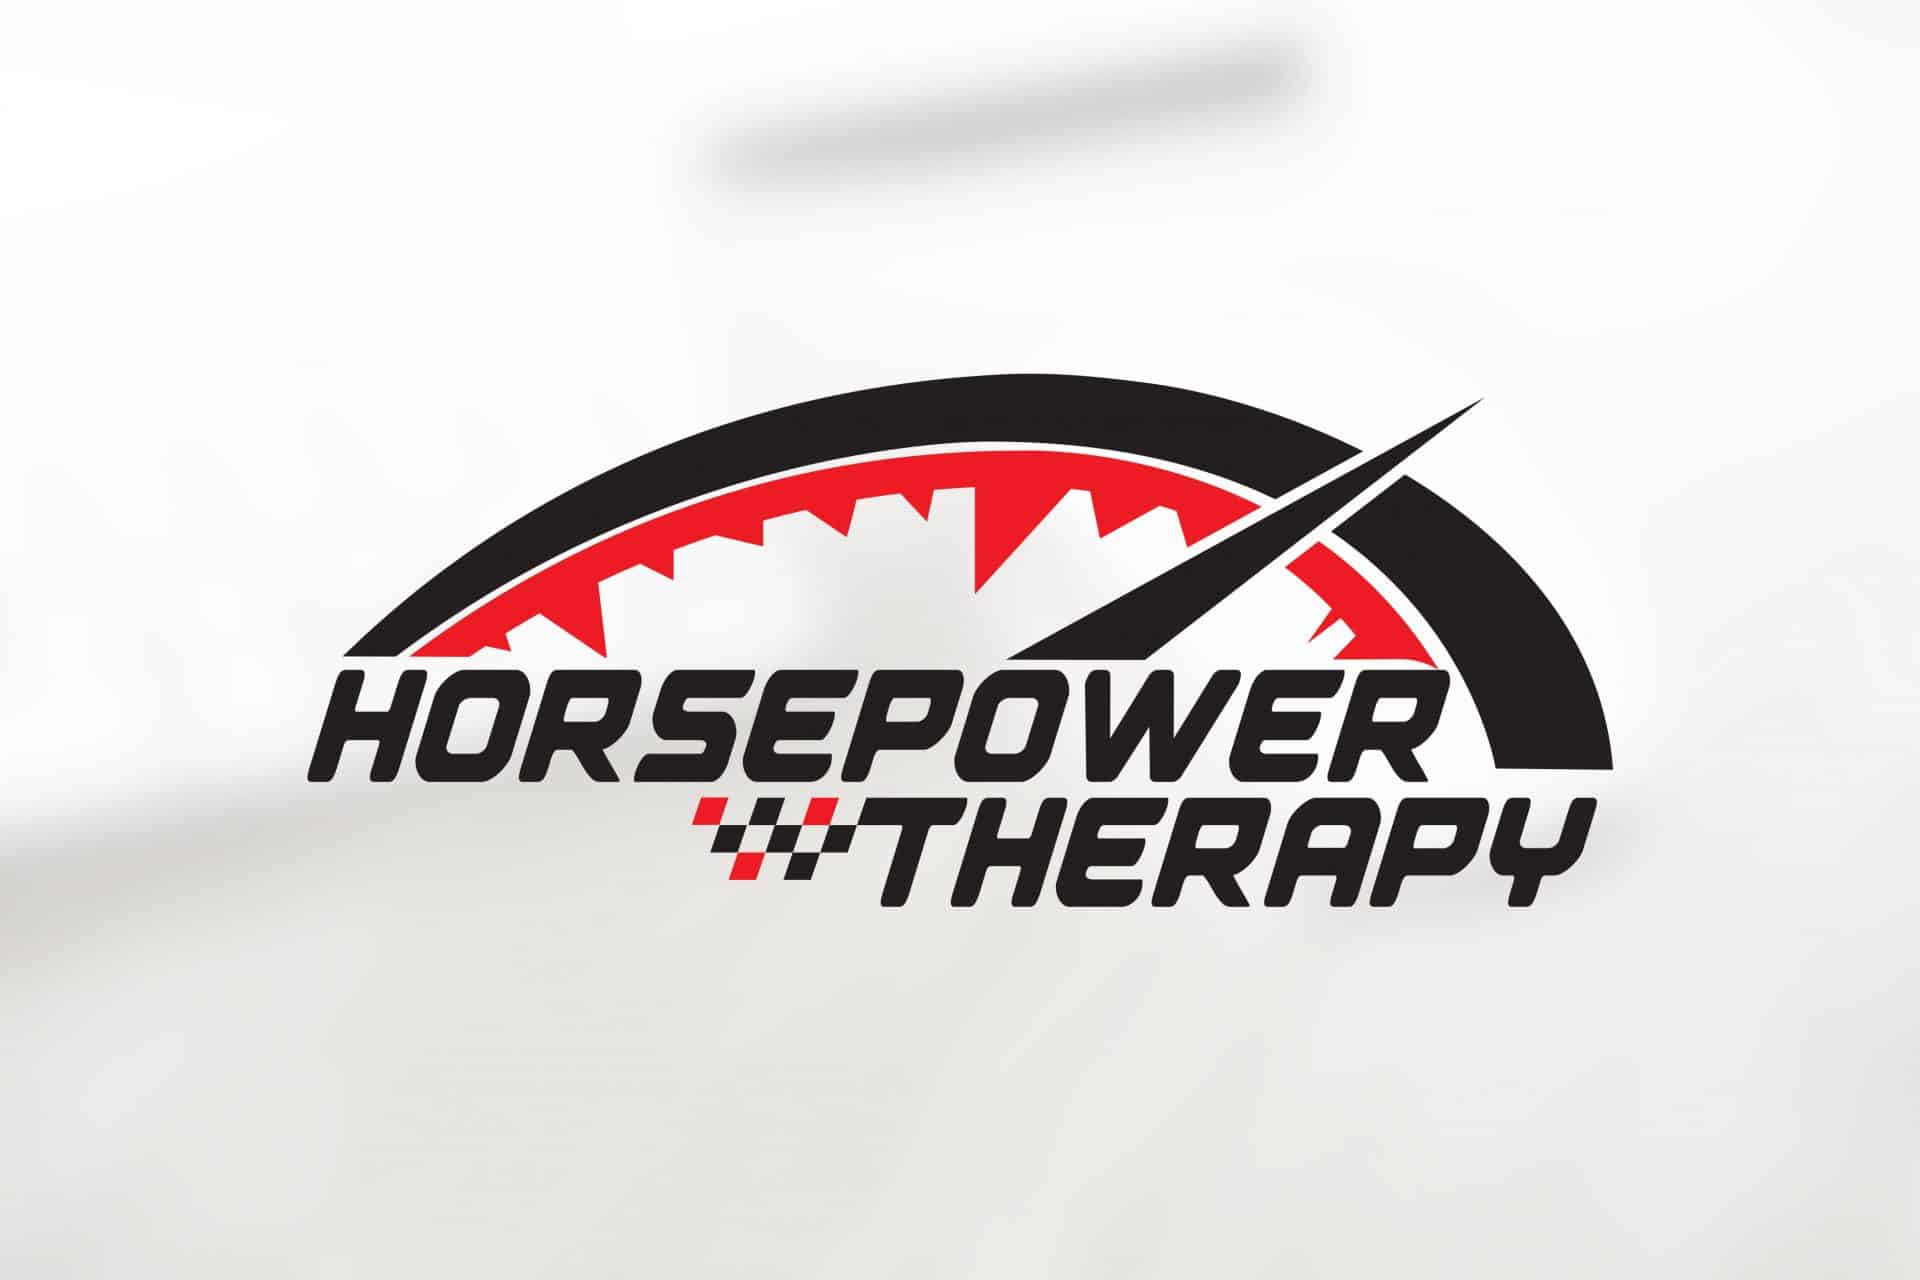 Horsepower Logo - horsepower-therapy-logo-by-skepple-inc-1 – Skepple Inc